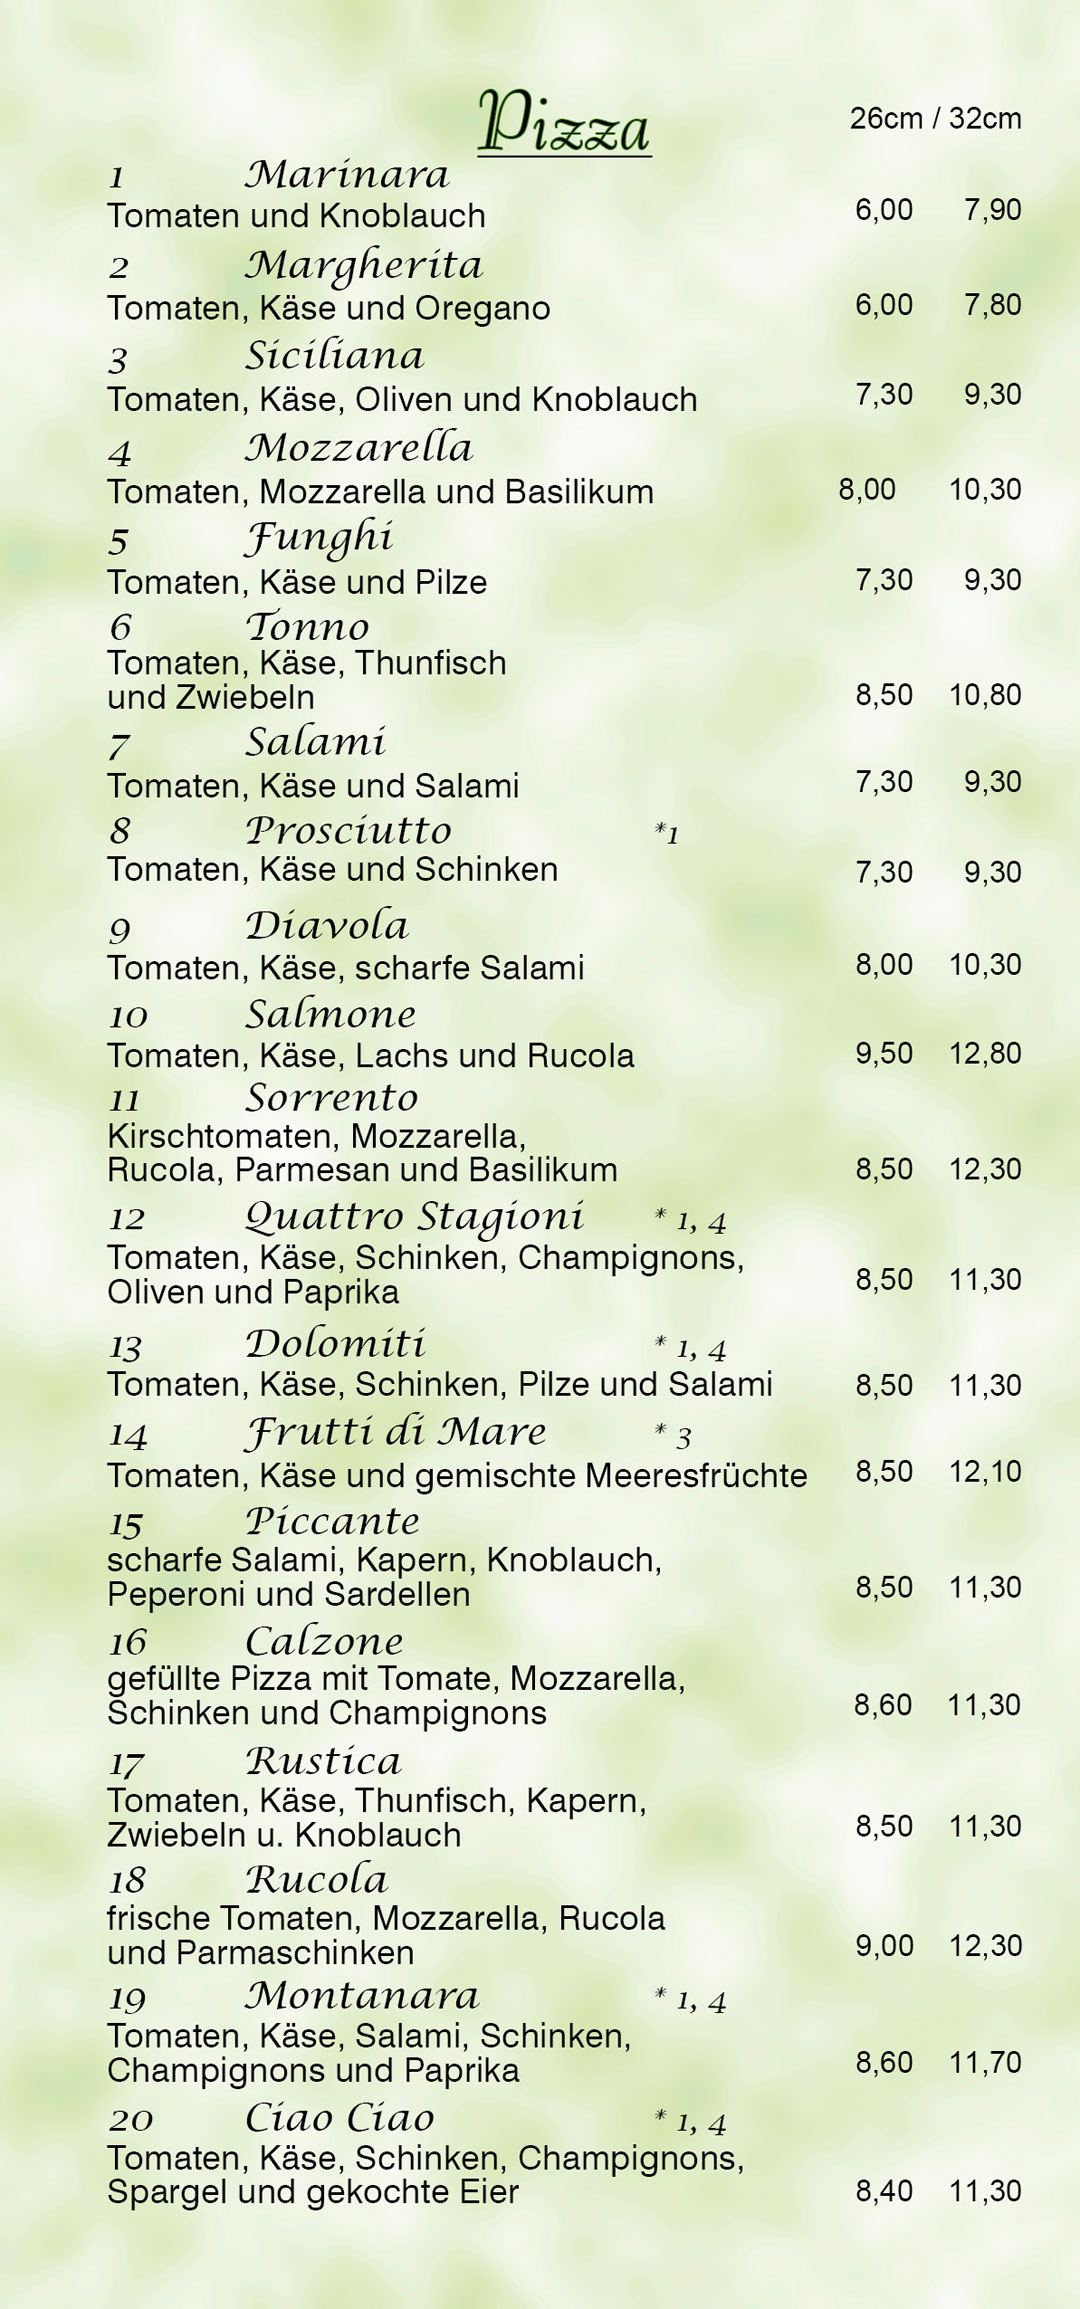 Menuekarte Lieferservice Seite 2 Dolomiti Mittweida